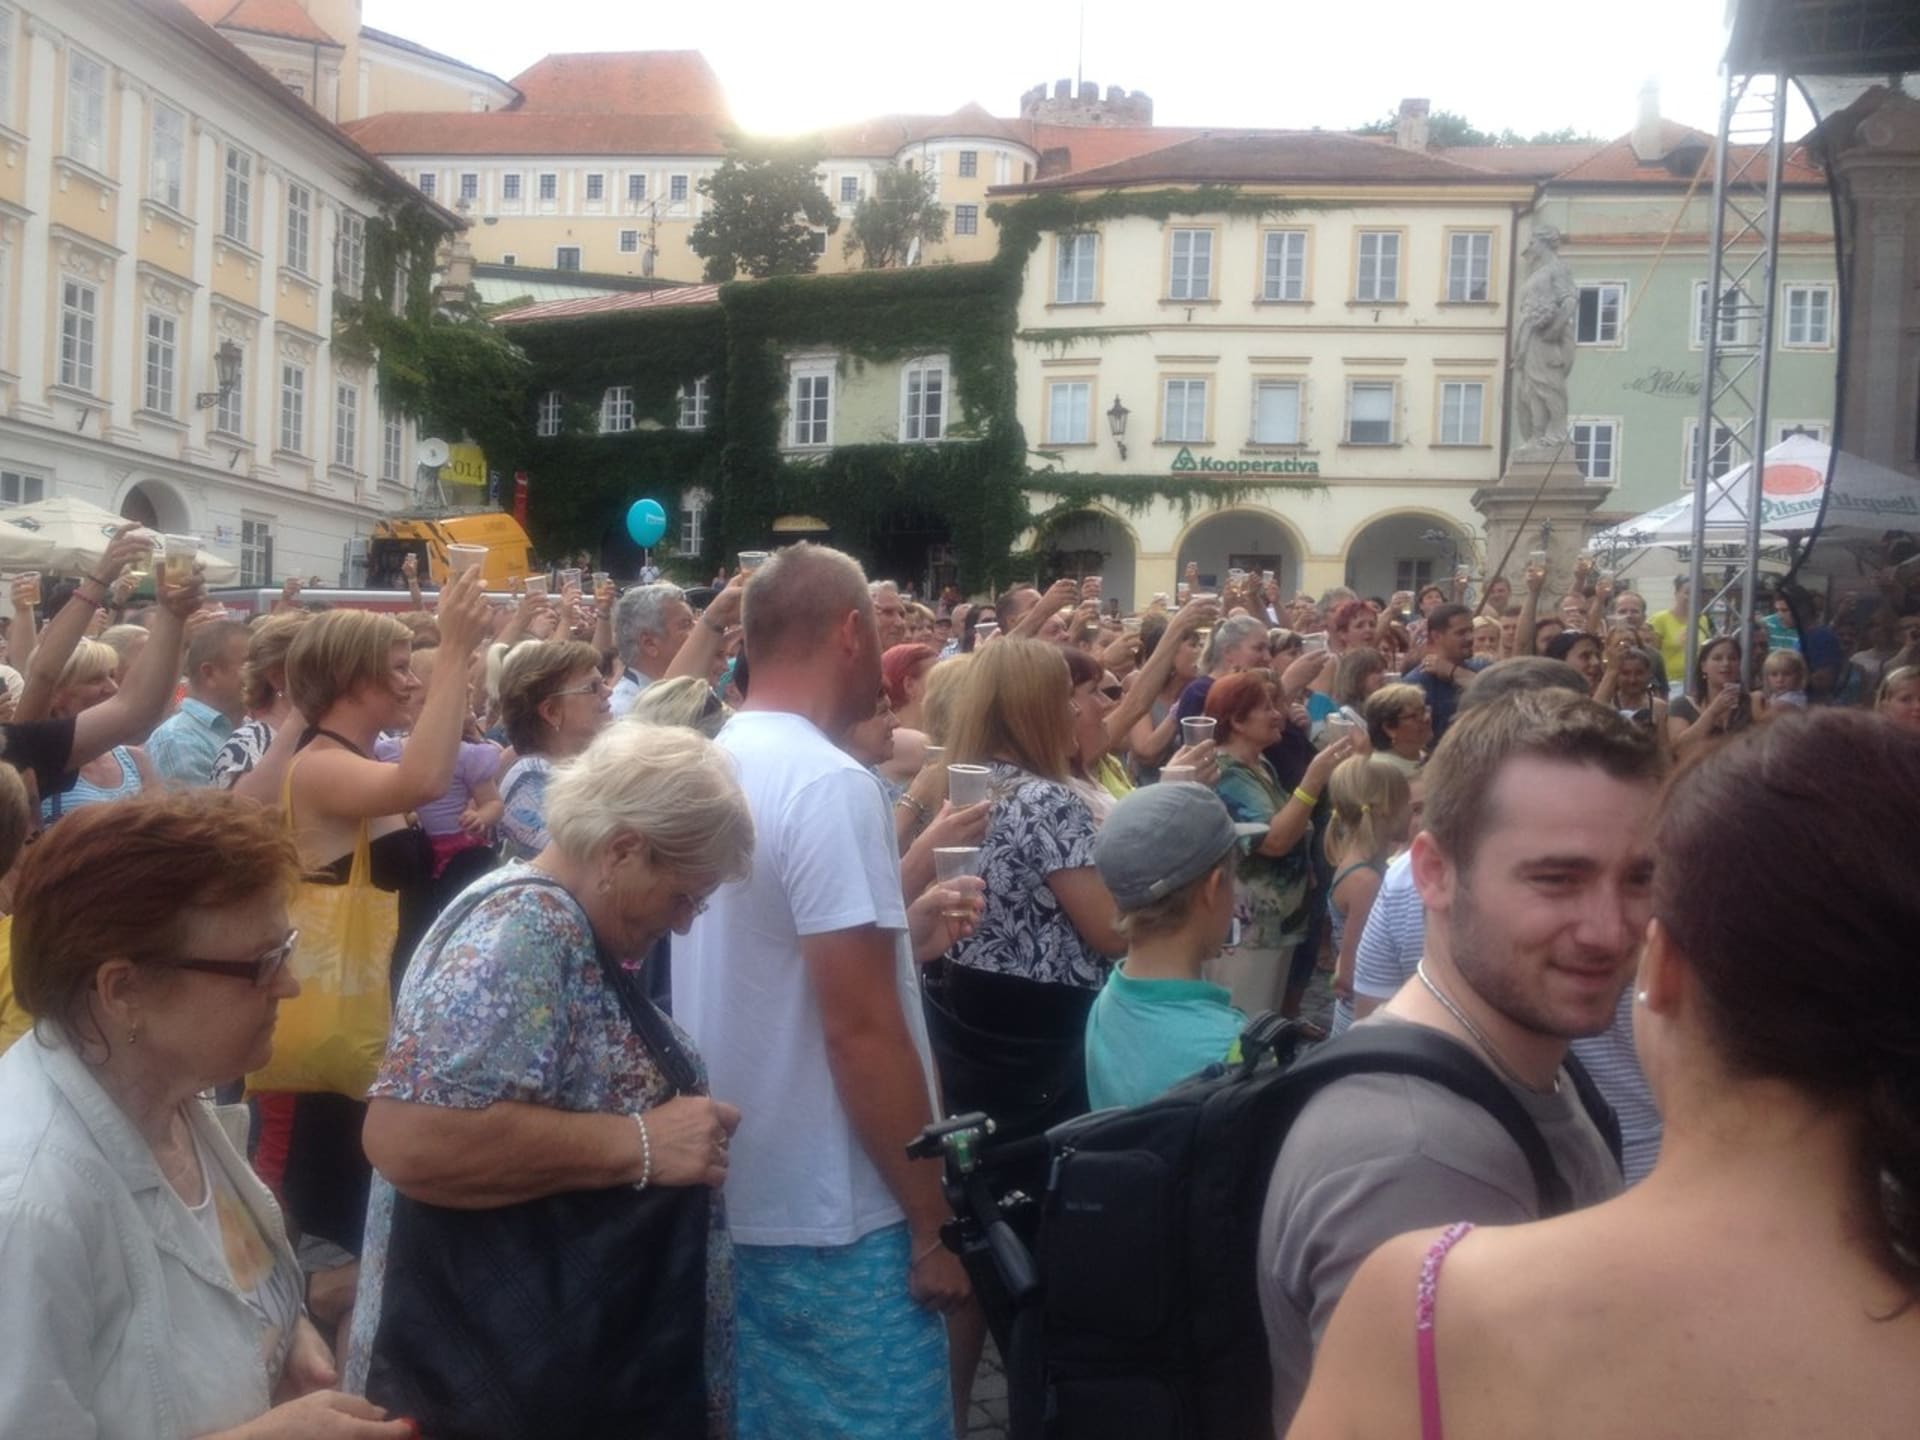 Obyvatelé Mikulova jsou z ruchu na náměstí, které tu způsobil přímý přenos FTV Prima, nadšení. Tak na zdraví!